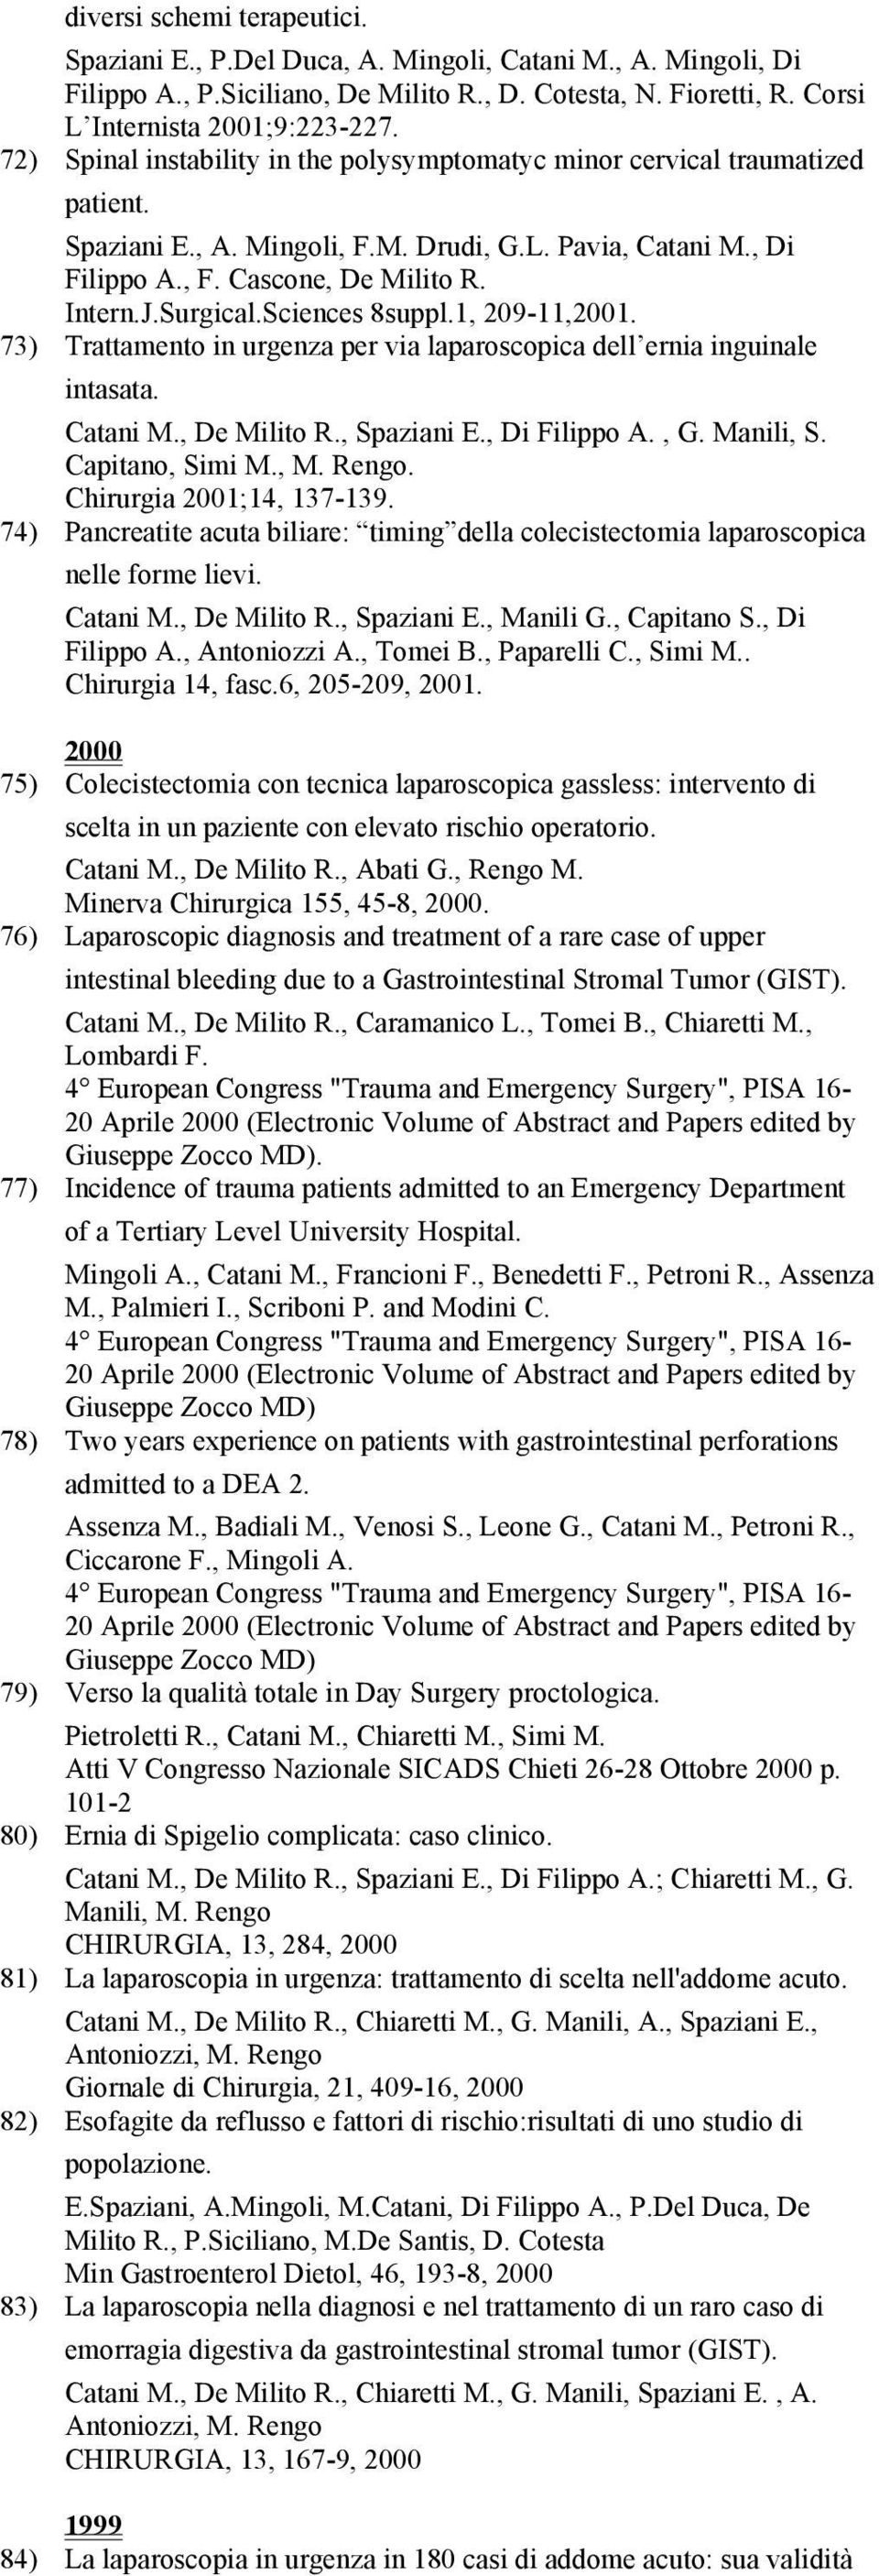 Sciences 8suppl.1, 209-11,2001. 73) Trattamento in urgenza per via laparoscopica dell ernia inguinale intasata. Catani M., De Milito R., Spaziani E., Di Filippo A., G. Manili, S. Capitano, Simi M., M.